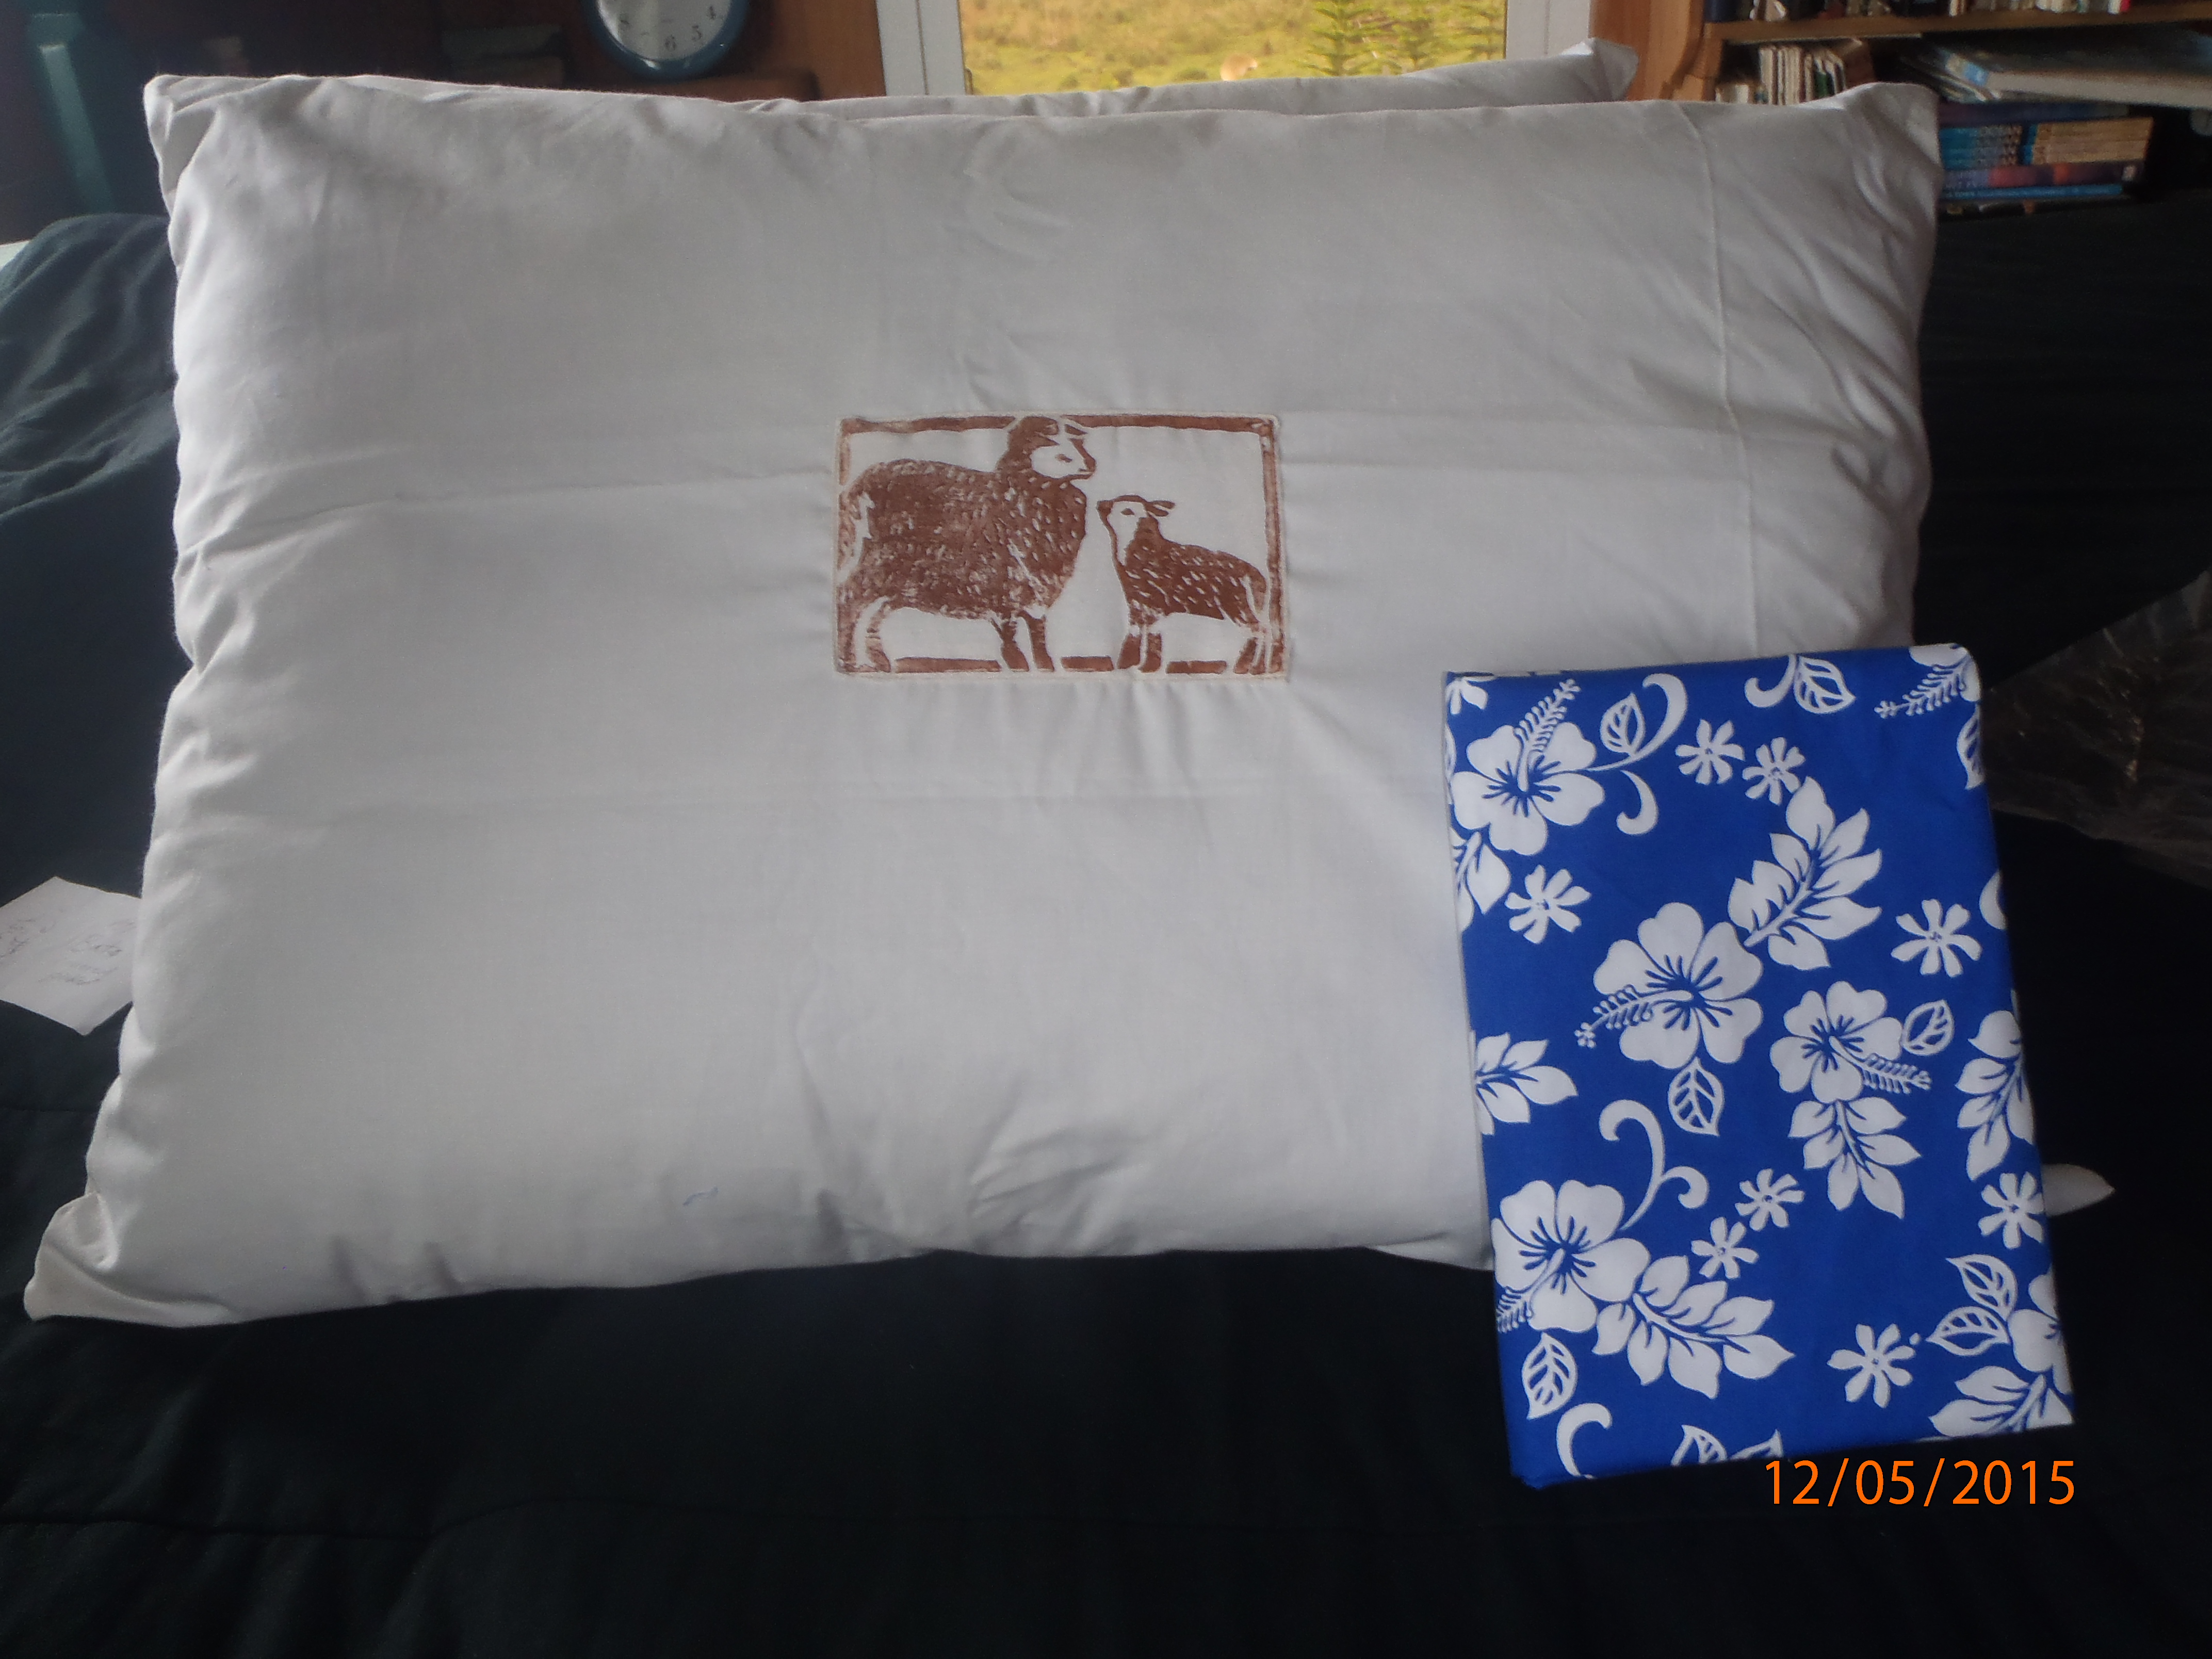 Pillow with Hawaiian print pillow case